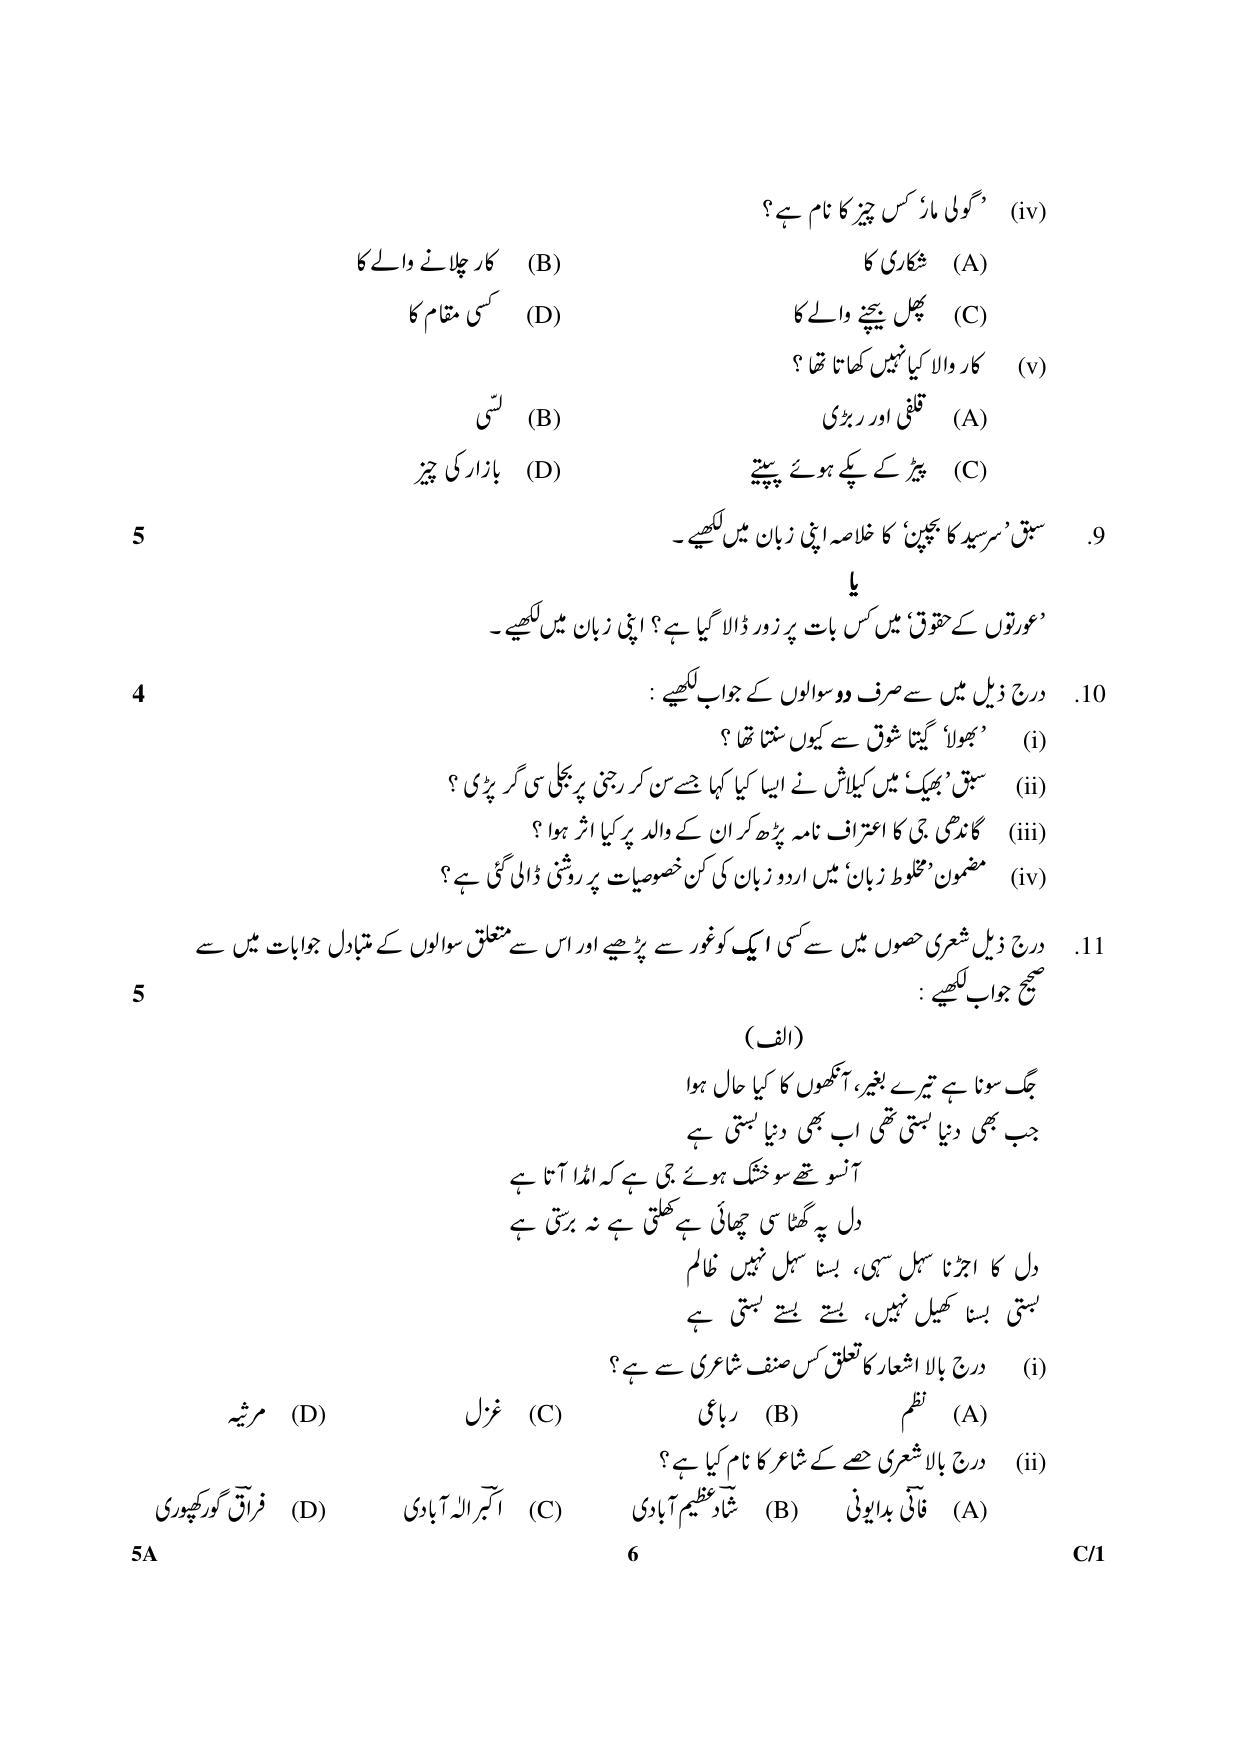 CBSE Class 10 5A Urdu (Course A) 2018 Compartment Question Paper - Page 6